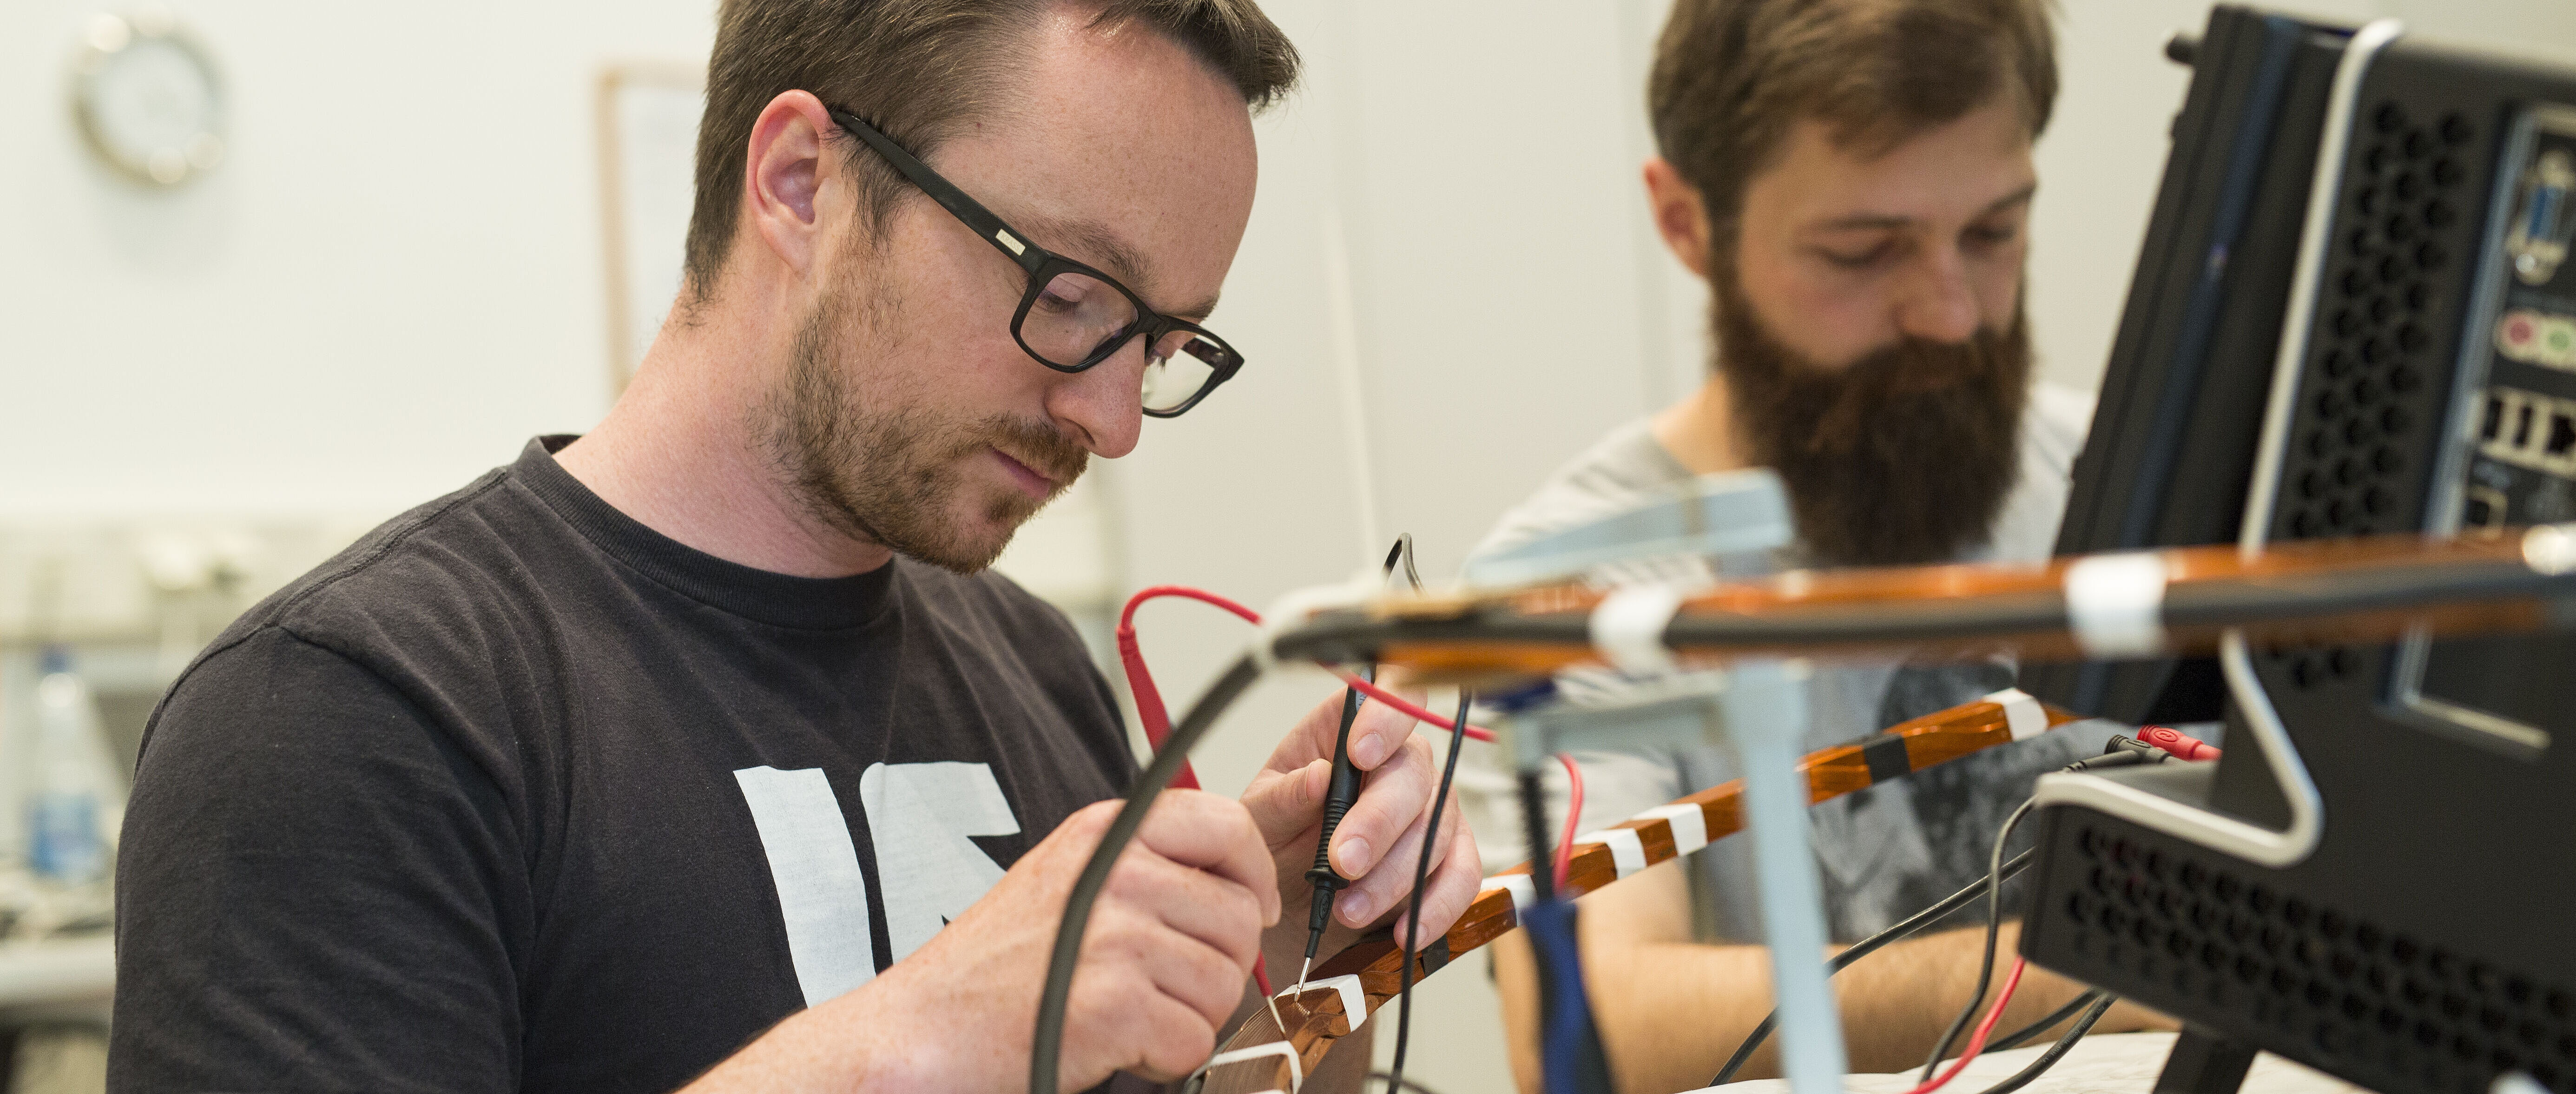 Zwei Studierende hantieren im Labor mit Messgeräten